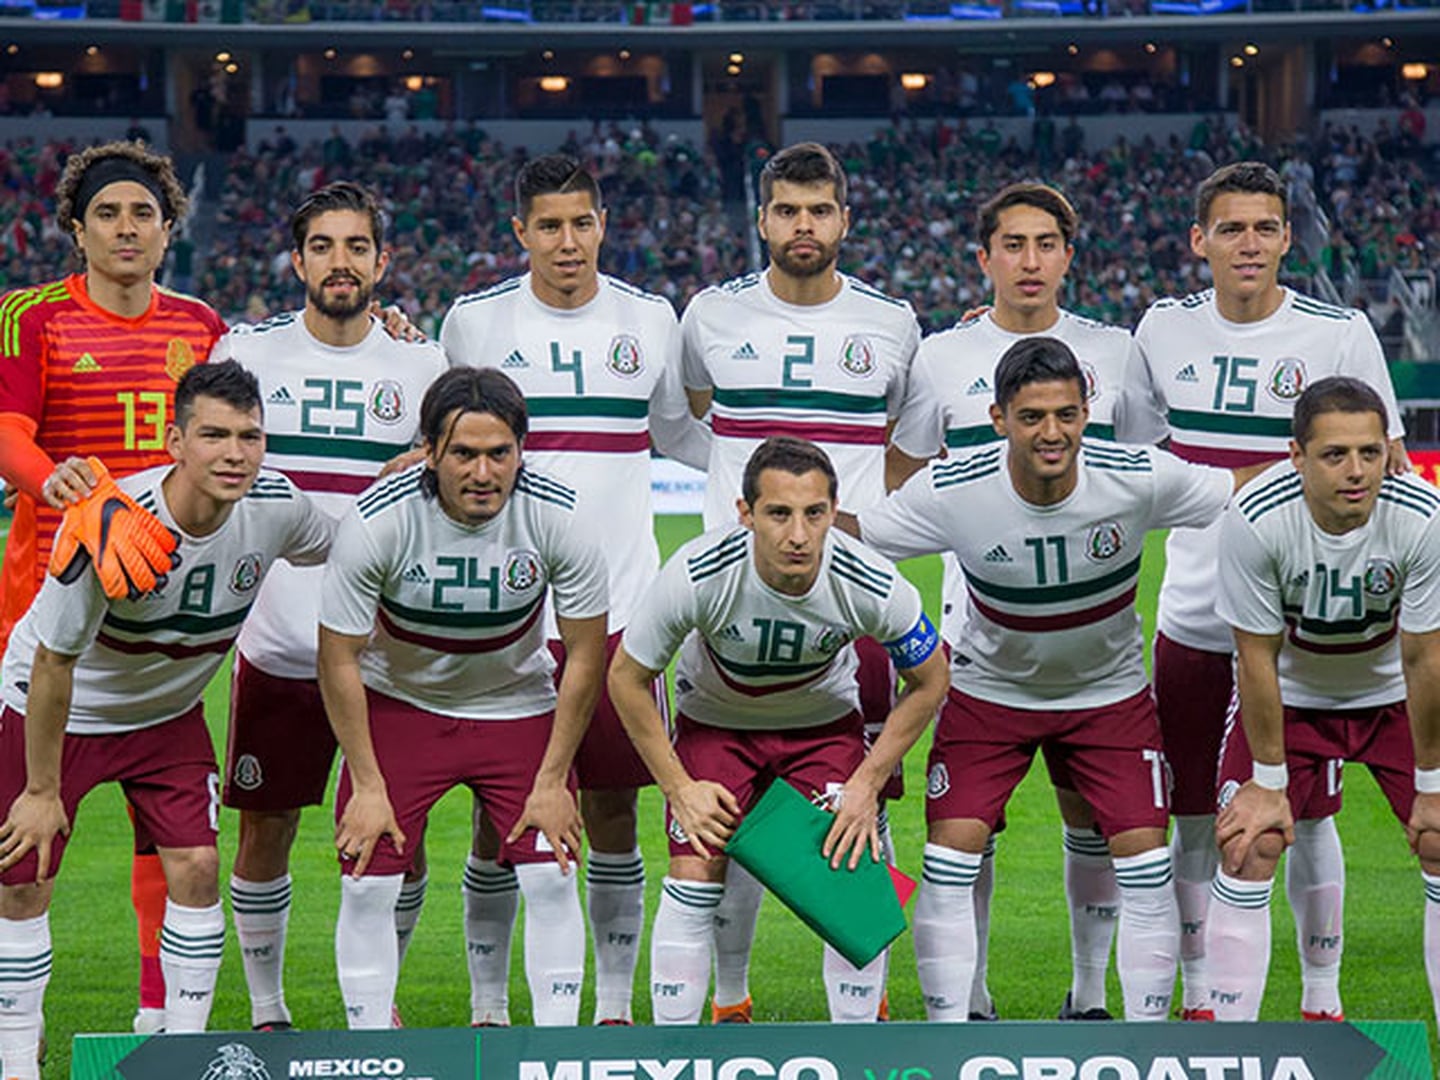 México jugará quinto partido por 'ambición sin límites, experiencia y sinergia de sus jugadores'